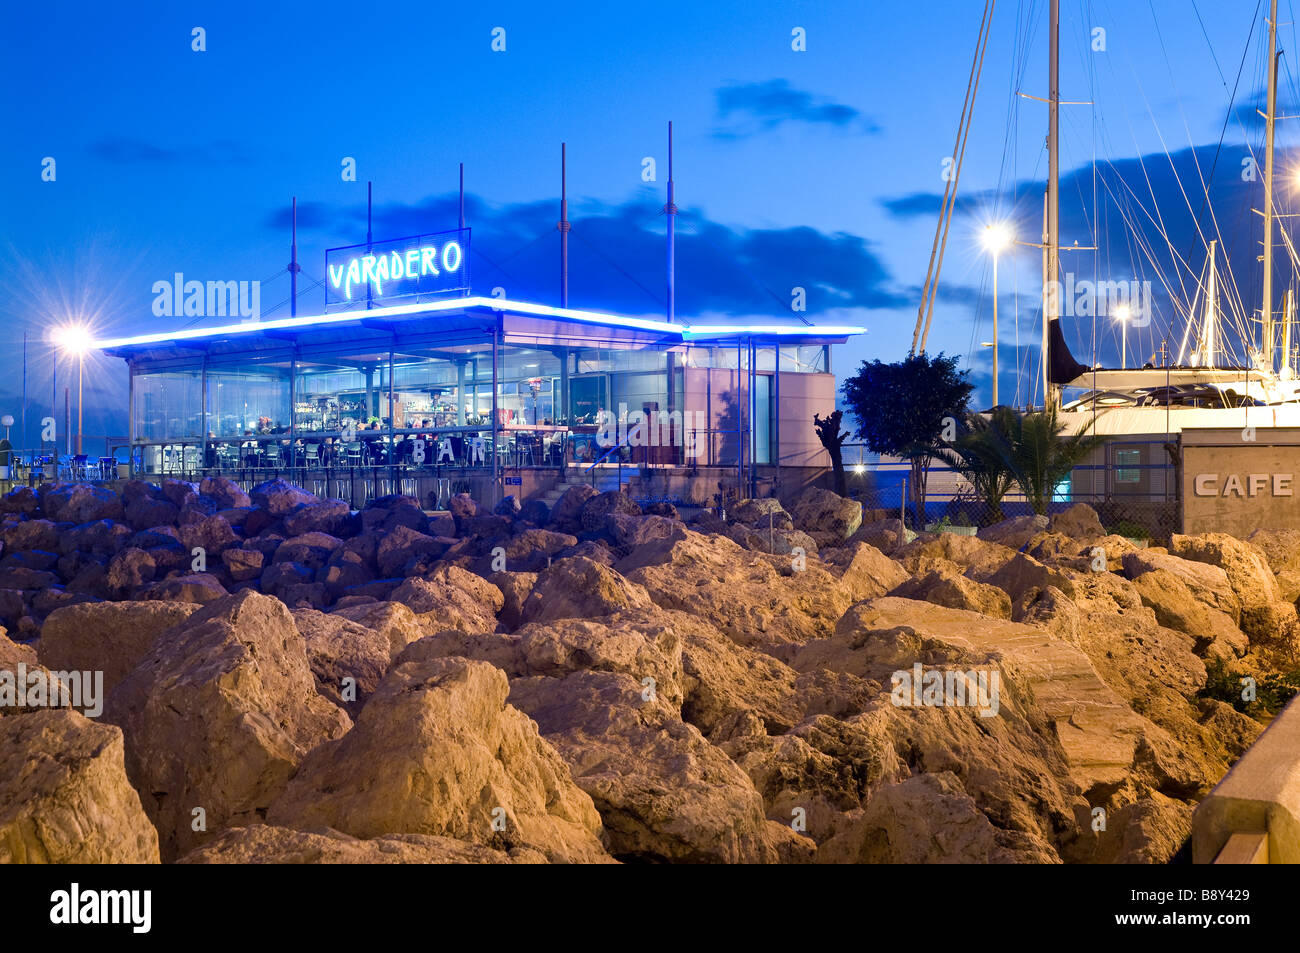 Europe Spain Balearic Islands Majorca Palma Cafe bar restaurant Varadero Mallorca Stock Photo